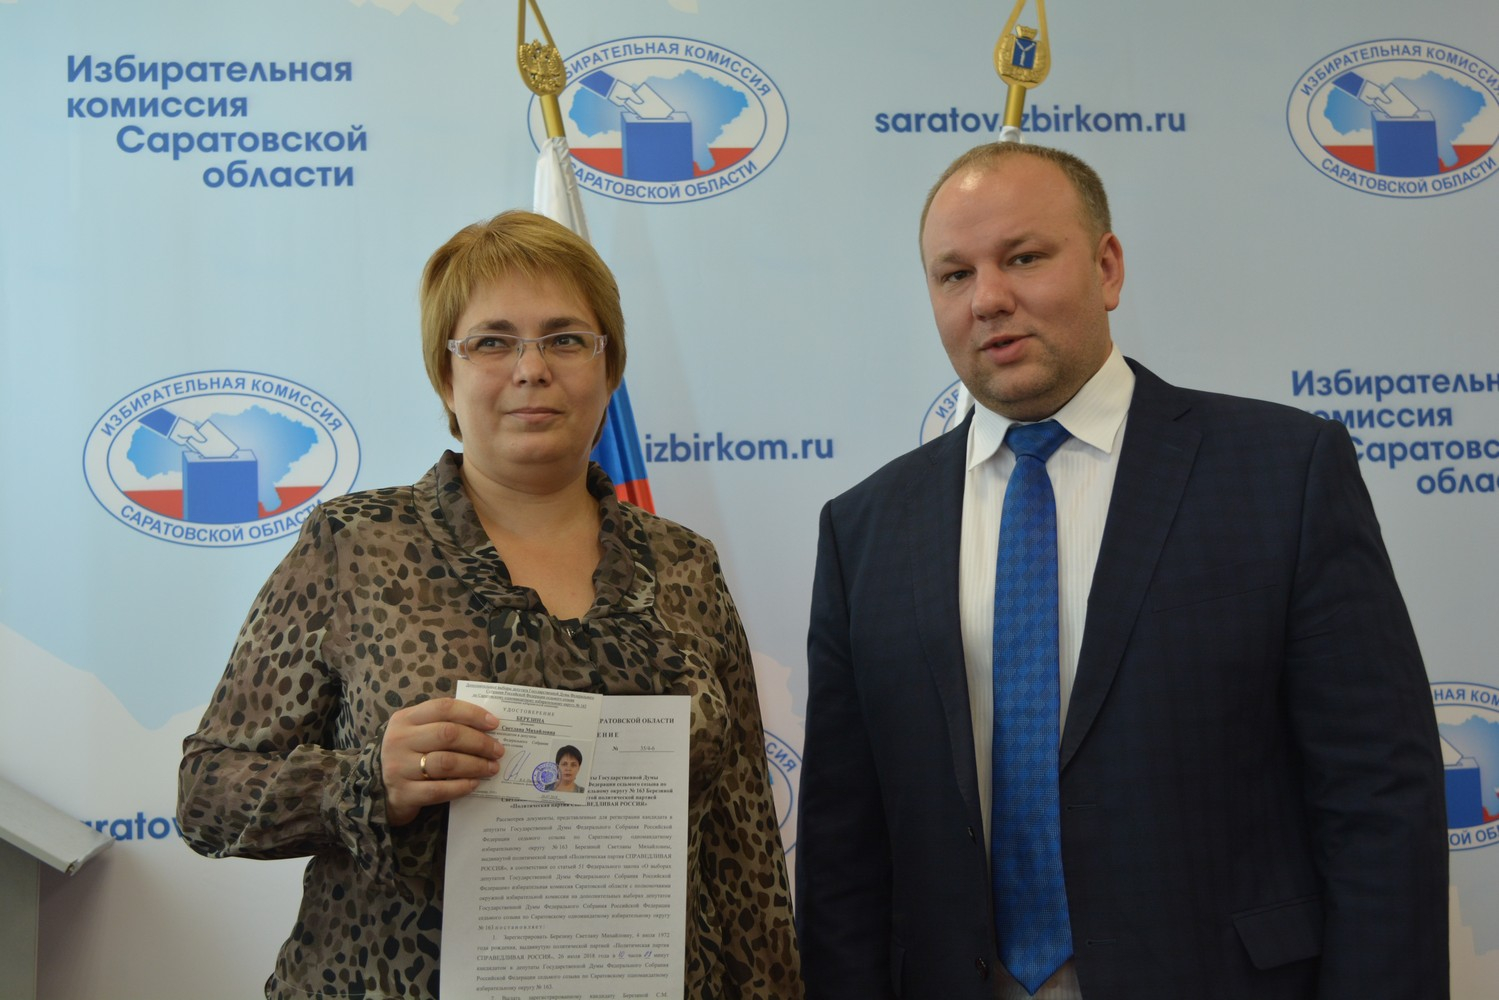 Сайт саратовской избирательной комиссии. Избирательная комиссия Саратовской области.